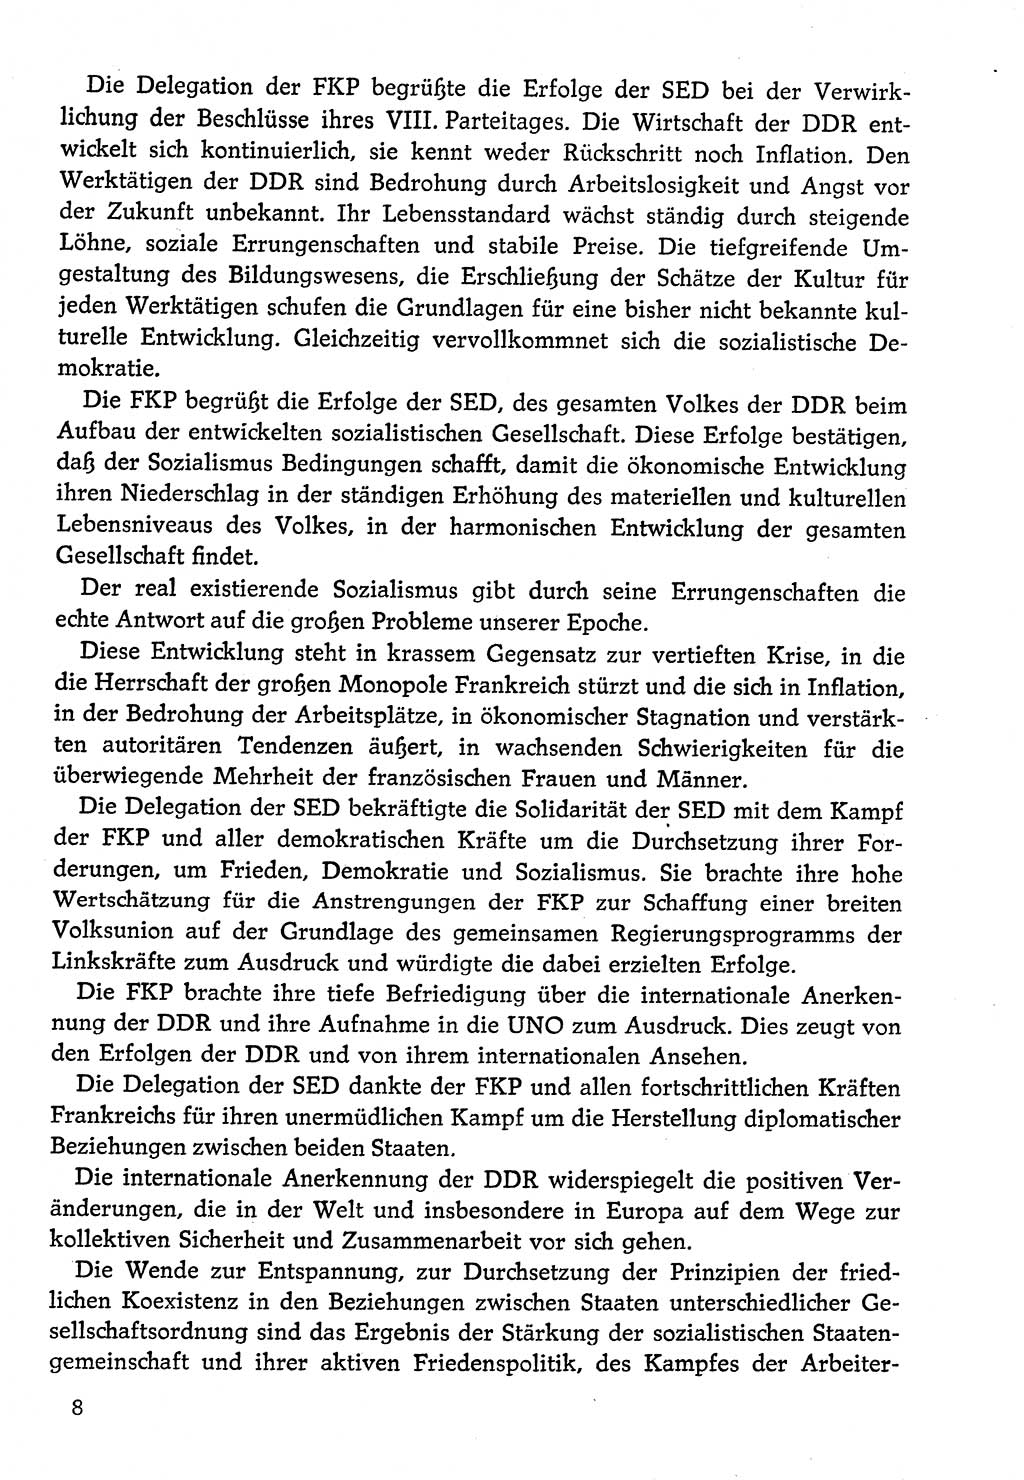 Dokumente der Sozialistischen Einheitspartei Deutschlands (SED) [Deutsche Demokratische Republik (DDR)] 1974-1975, Seite 8 (Dok. SED DDR 1978, Bd. ⅩⅤ, S. 8)